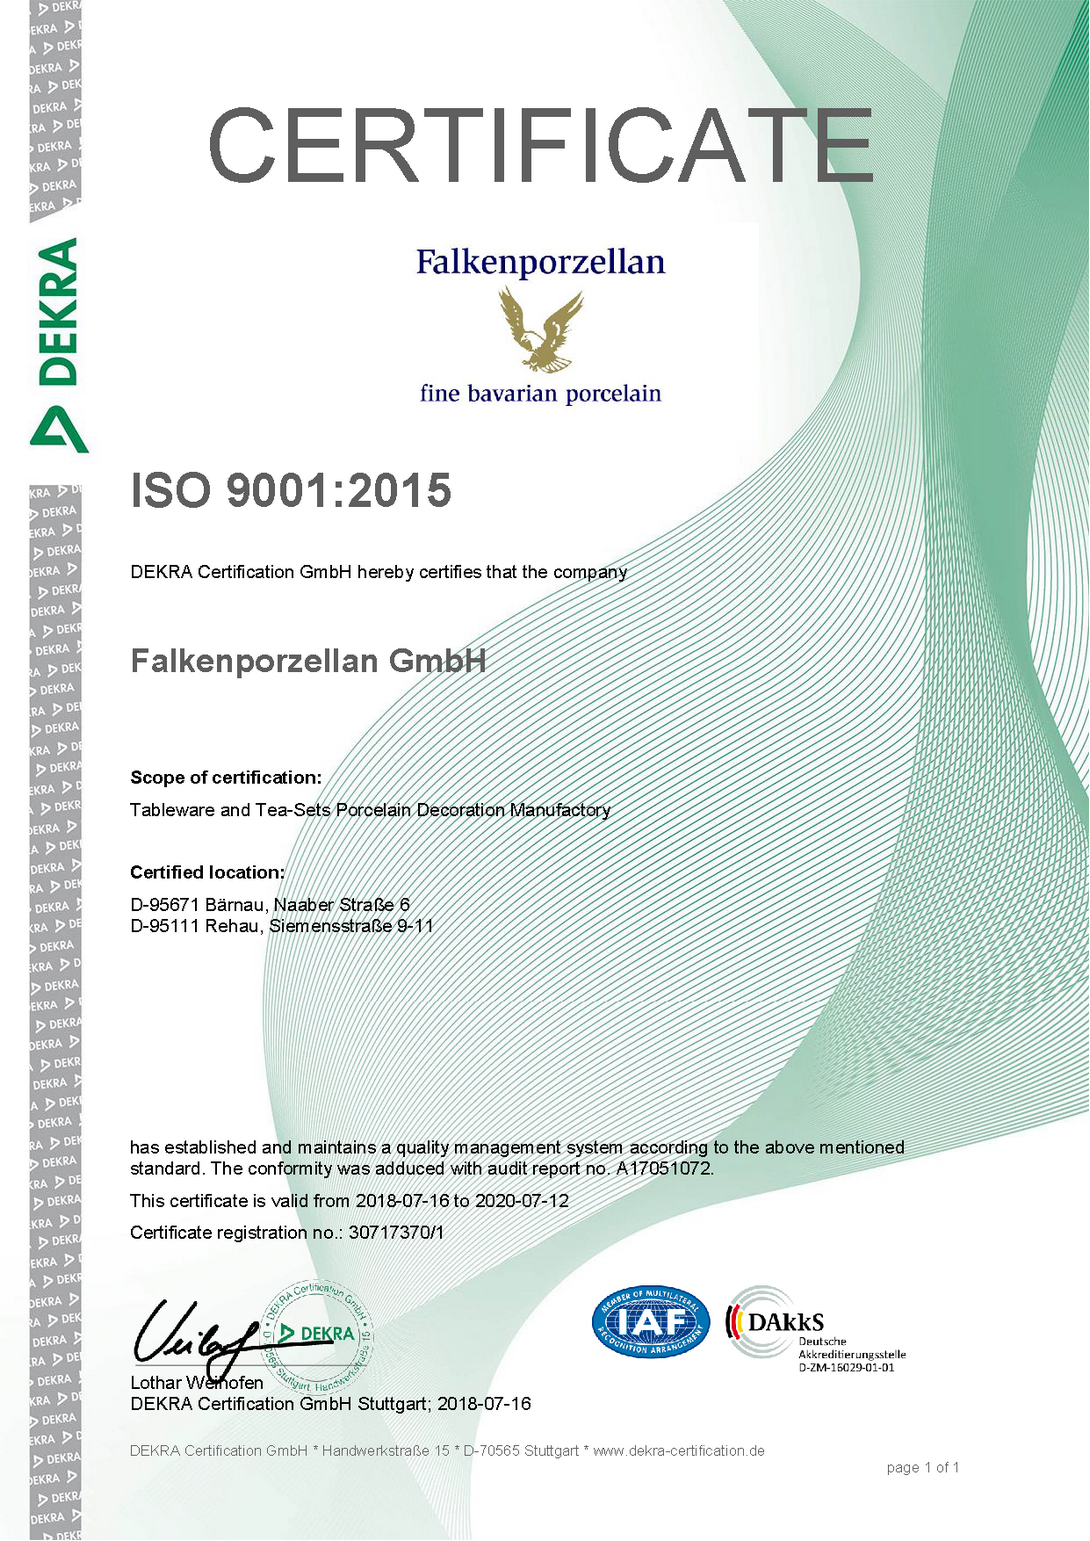 Сертификат соответствия FalkenPorzellan ФалкенПорцеллан Германия